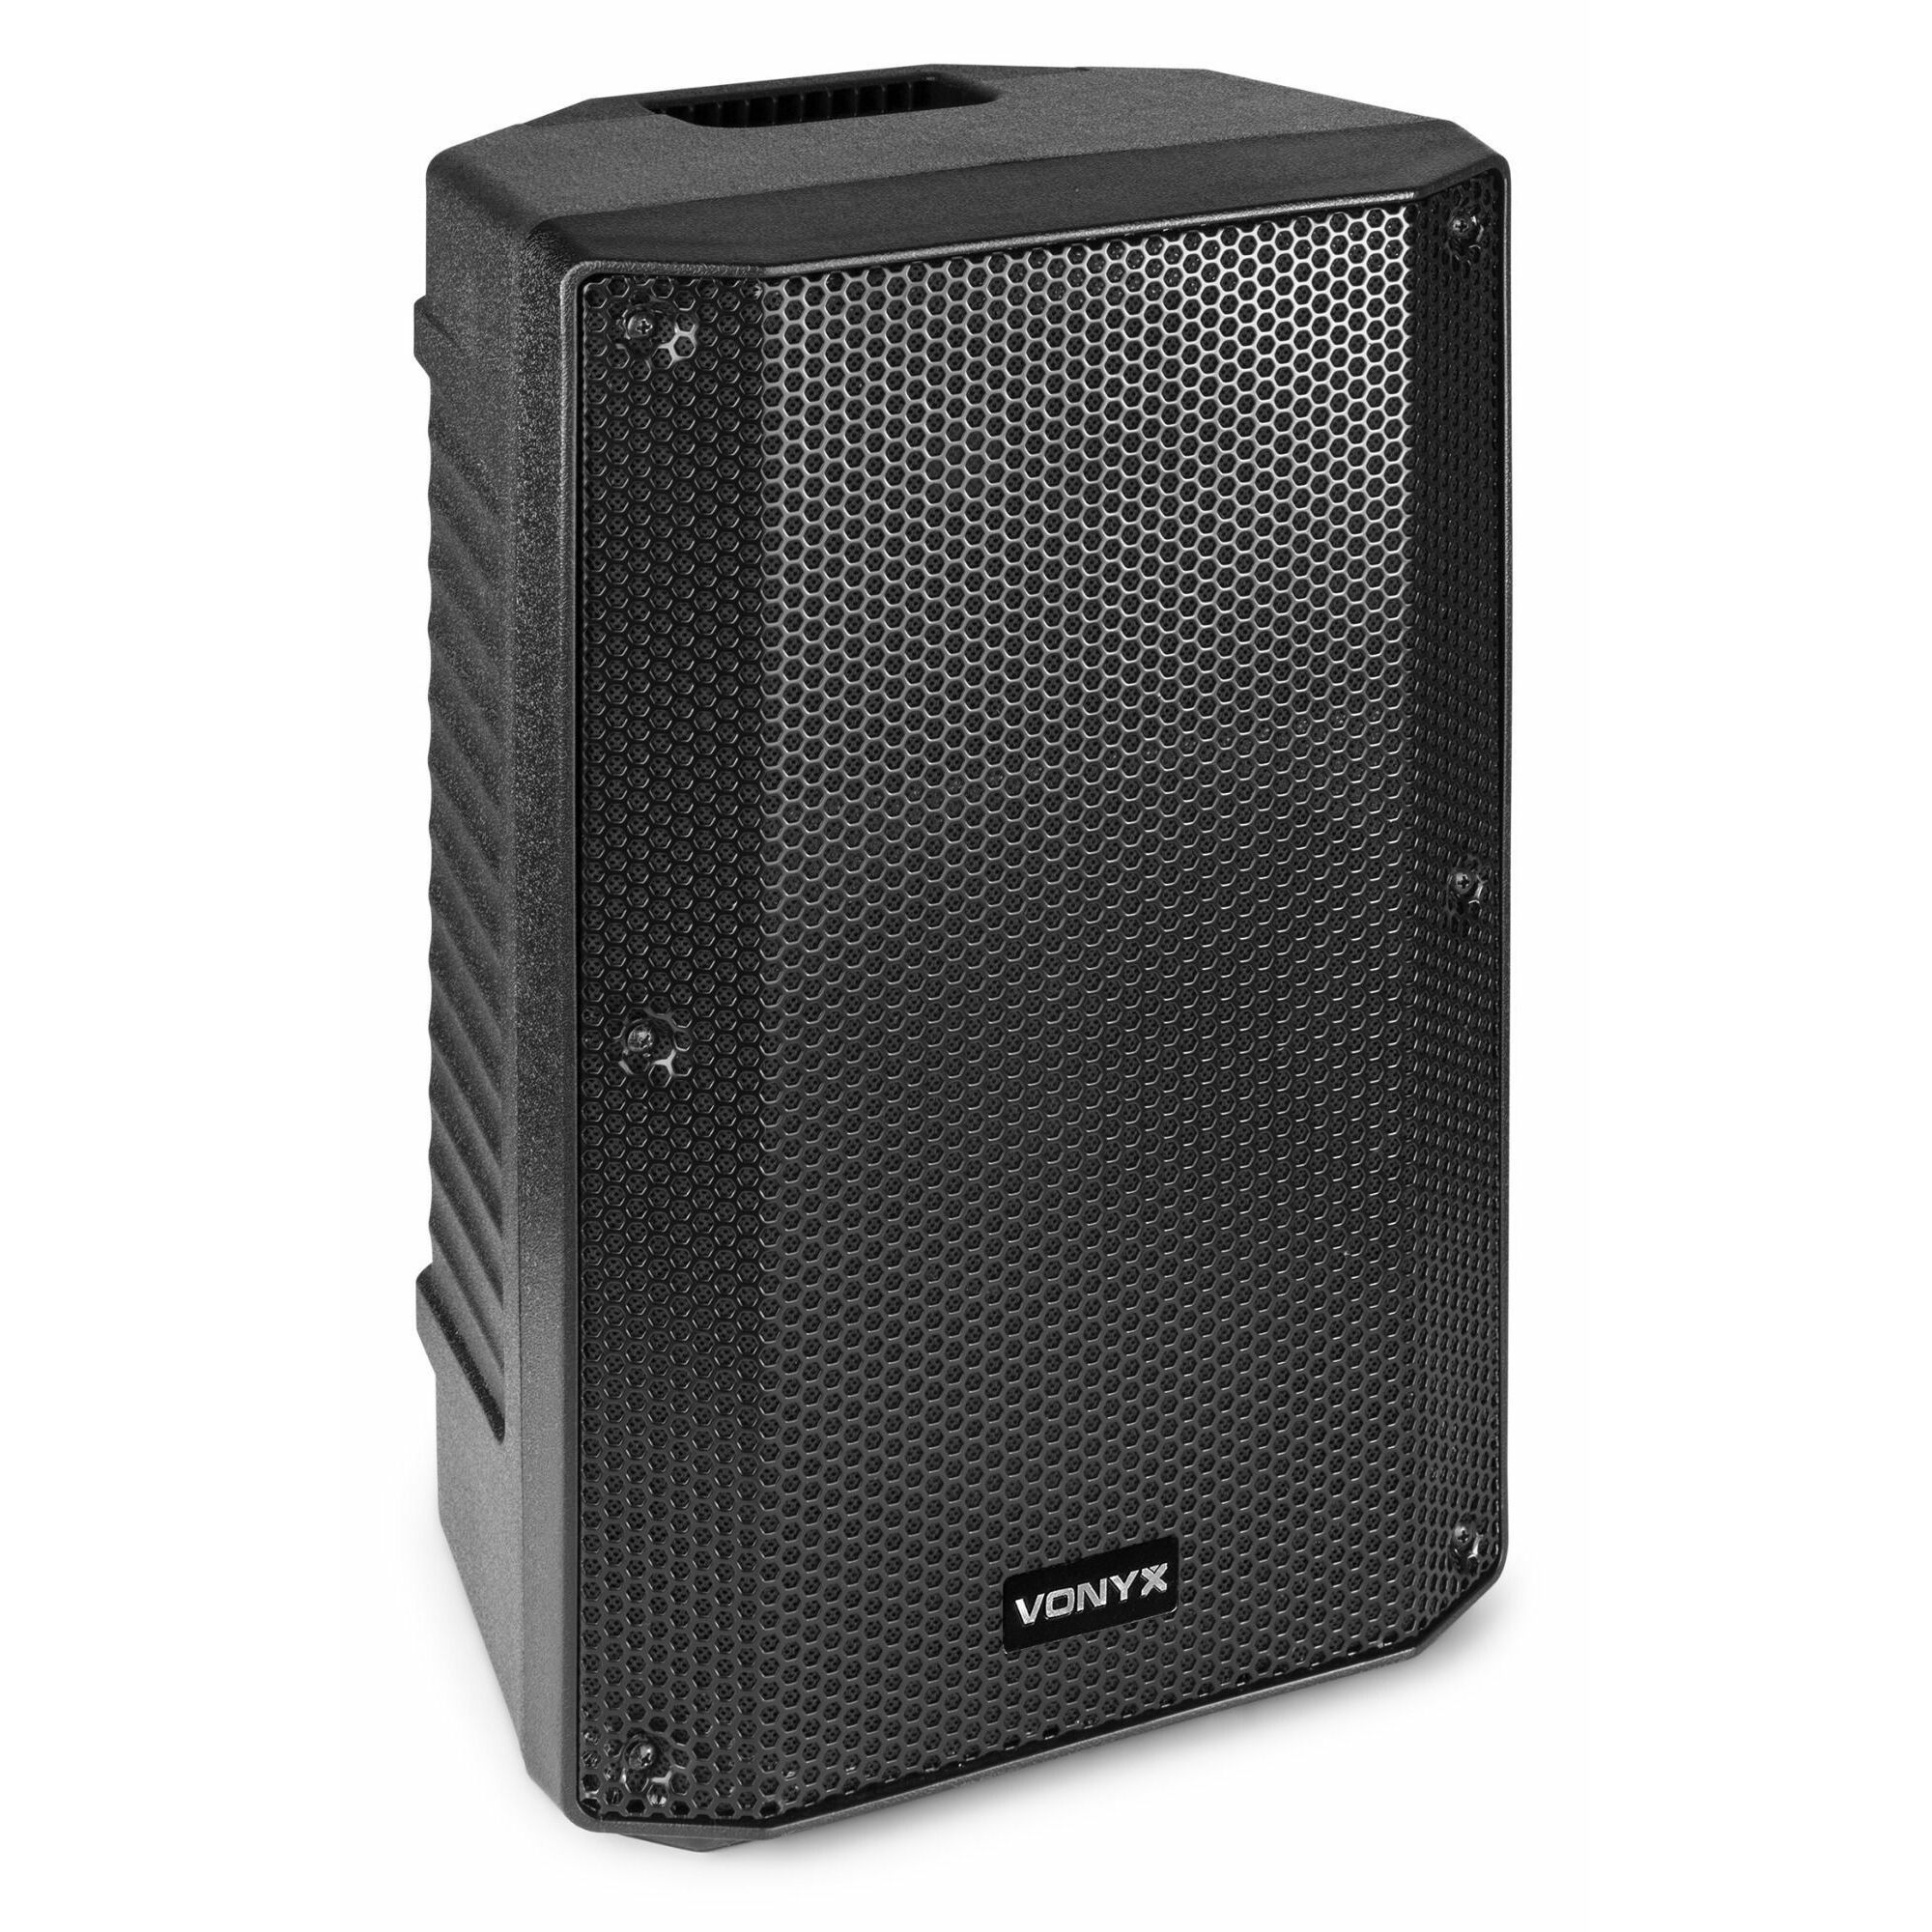 Vonyx VSA10P speaker 10" kopen?